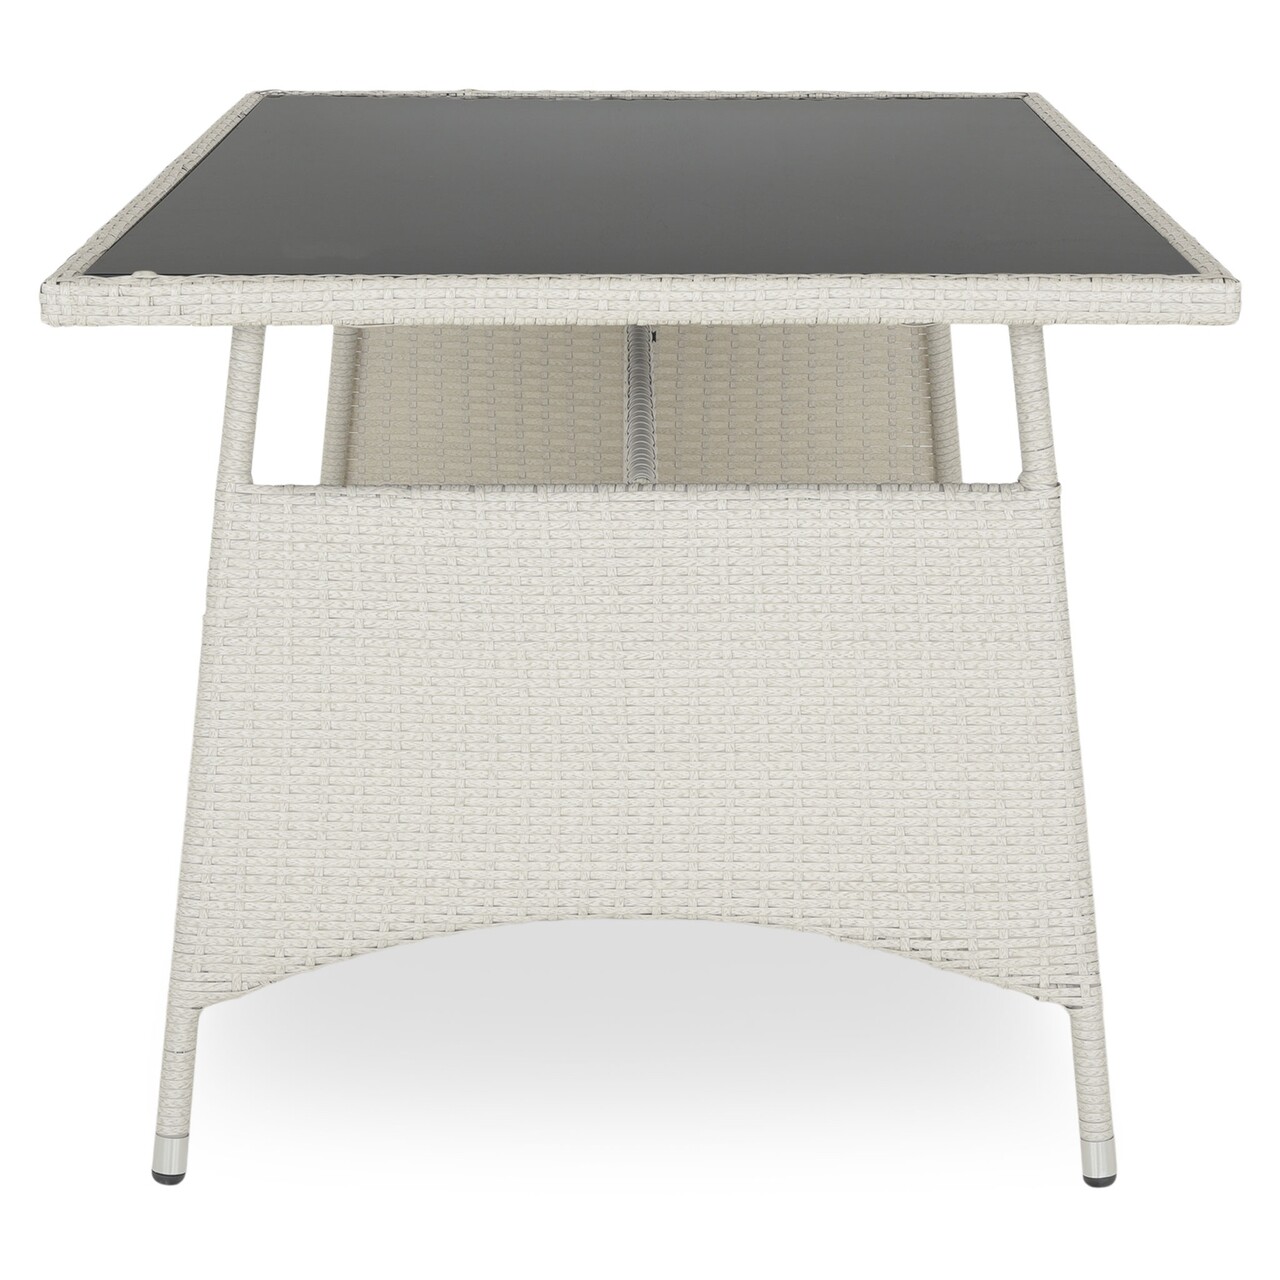 Presley Asztal, 150 x 90 x 75 cm, acél, szürke